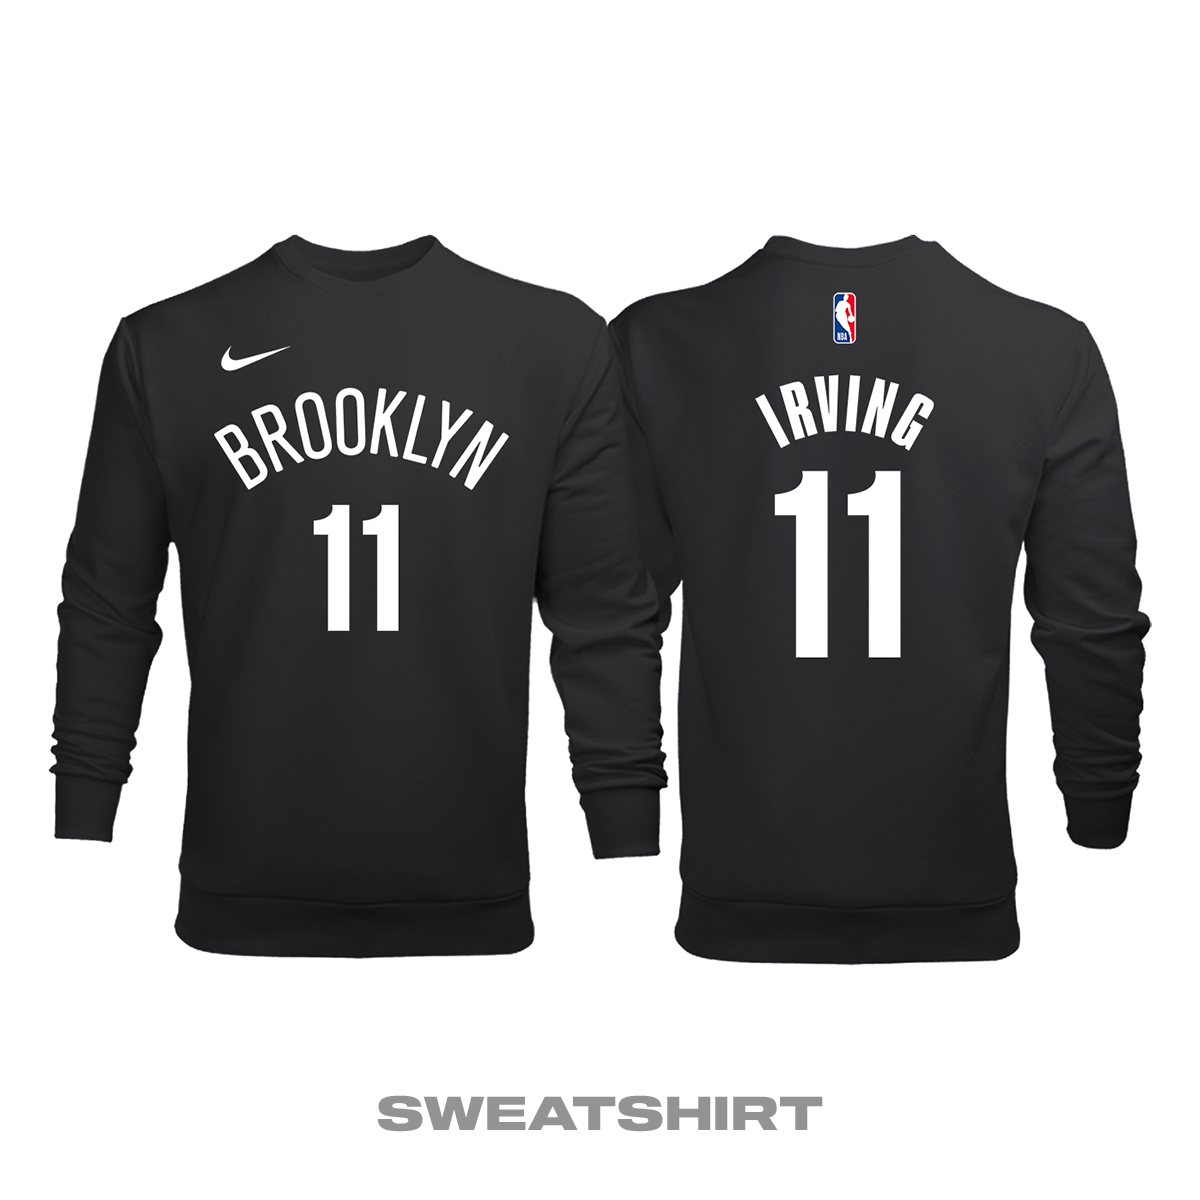 Brooklyn Nets: City Edition 2018/2019 Sweatshirt